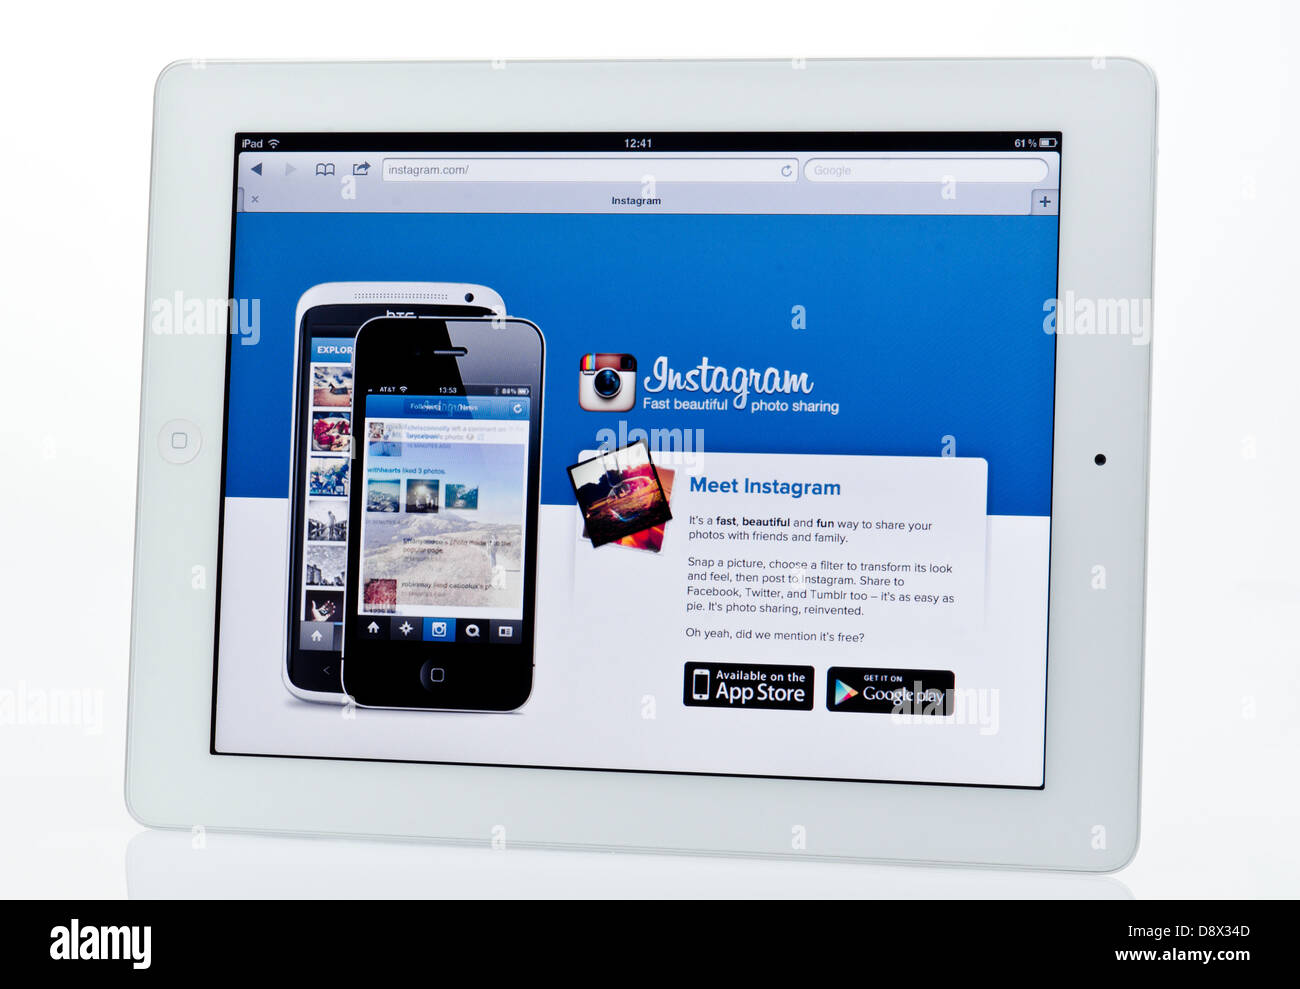 Apple Ipad showing Instagram Website. Stock Photo